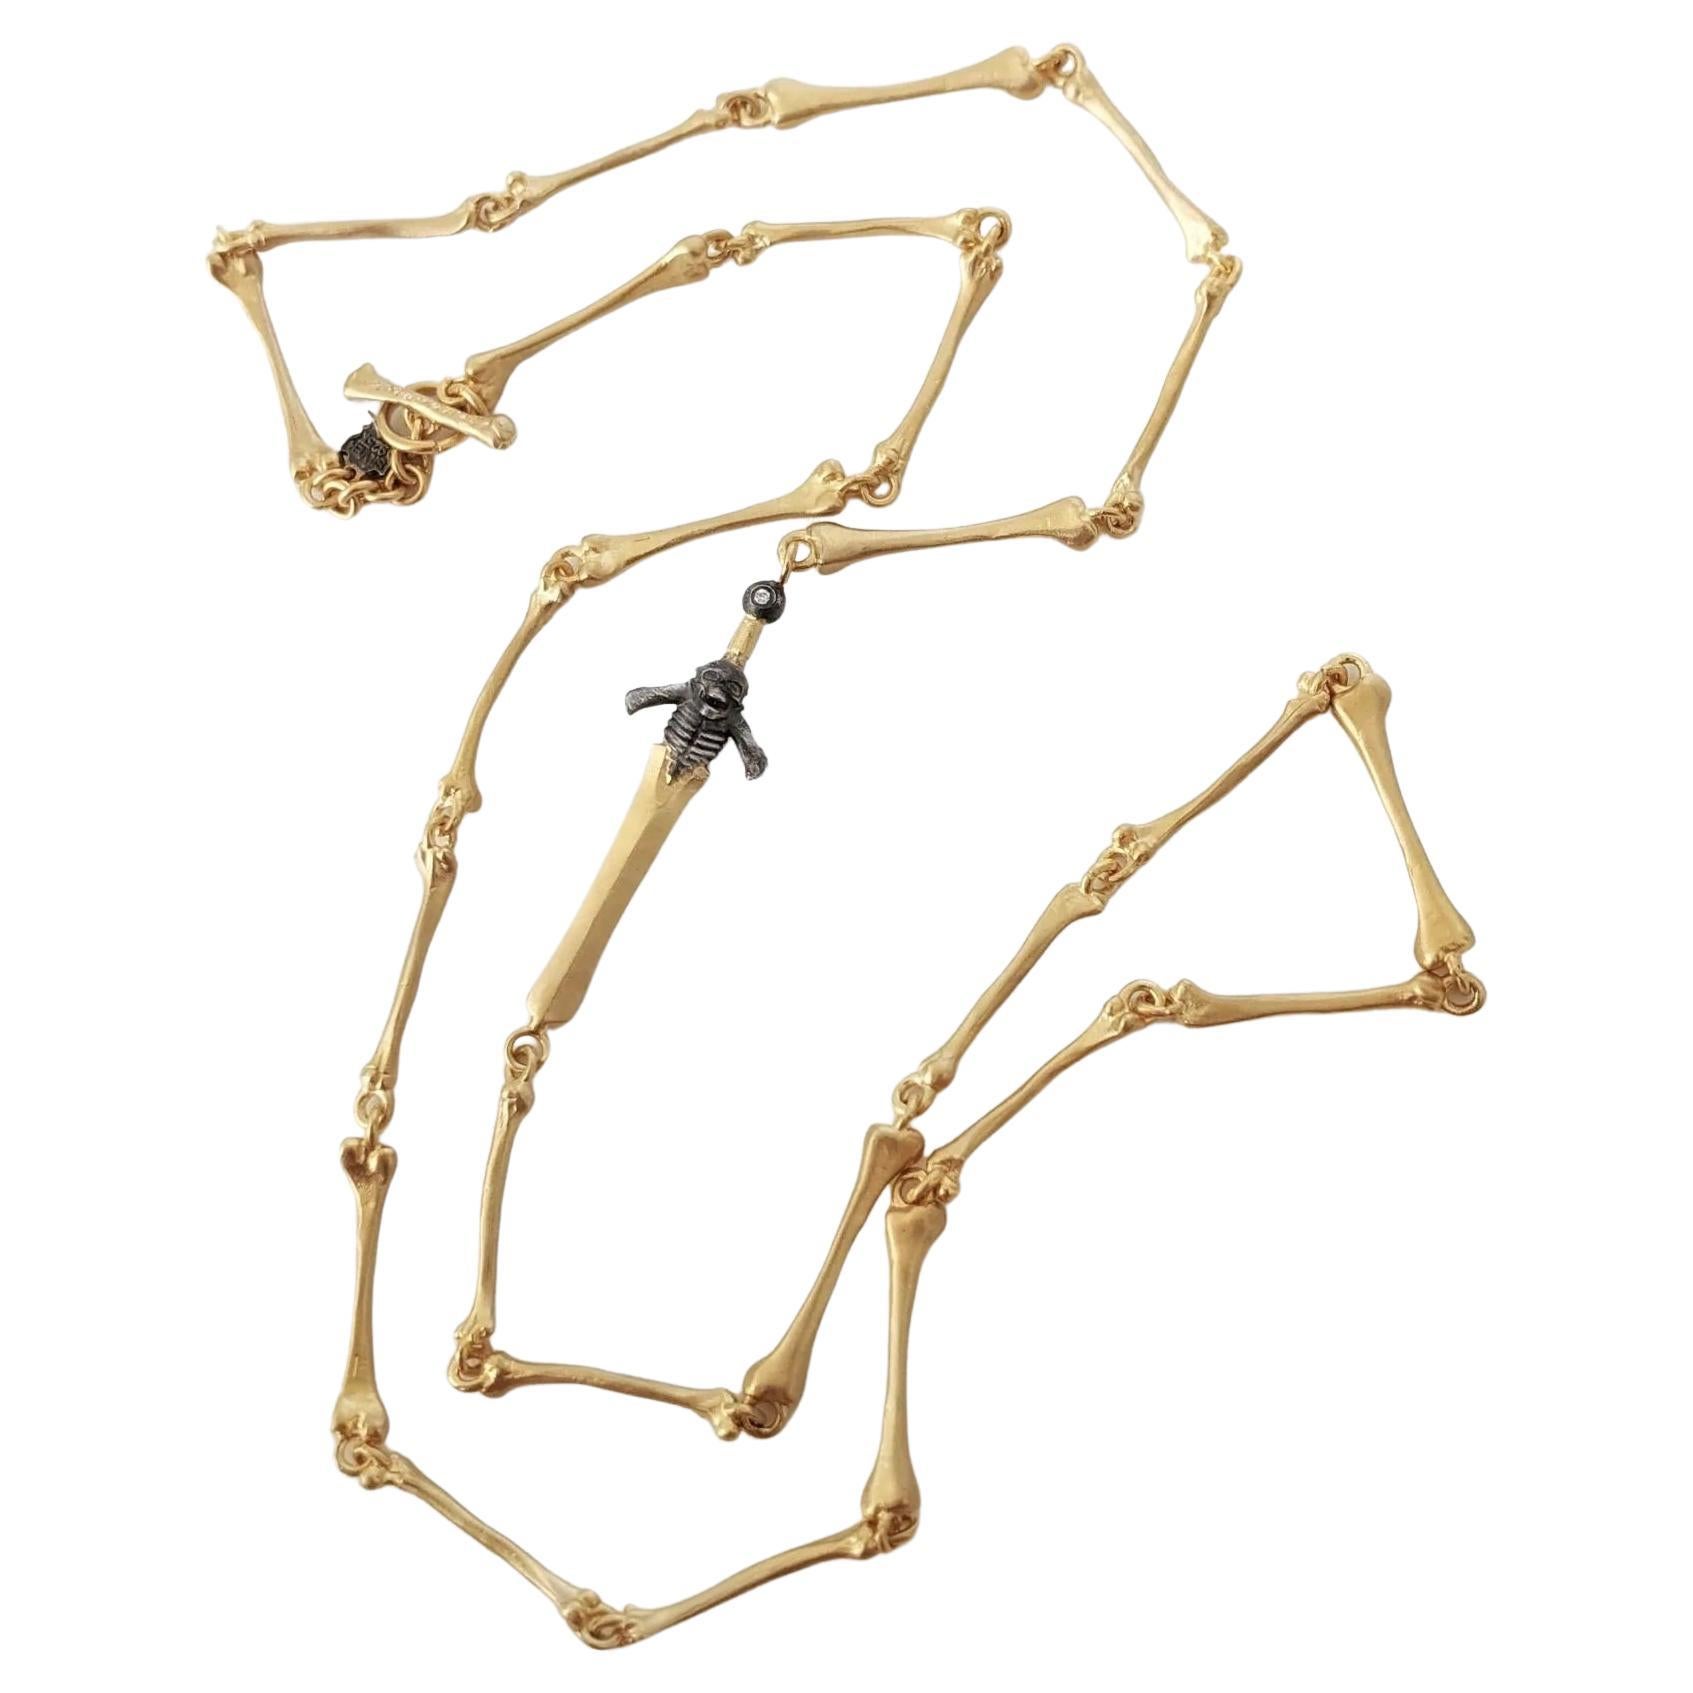 Momento Mori Skeleton Bone Chain Necklace with Diamond Detail by Kurtulan